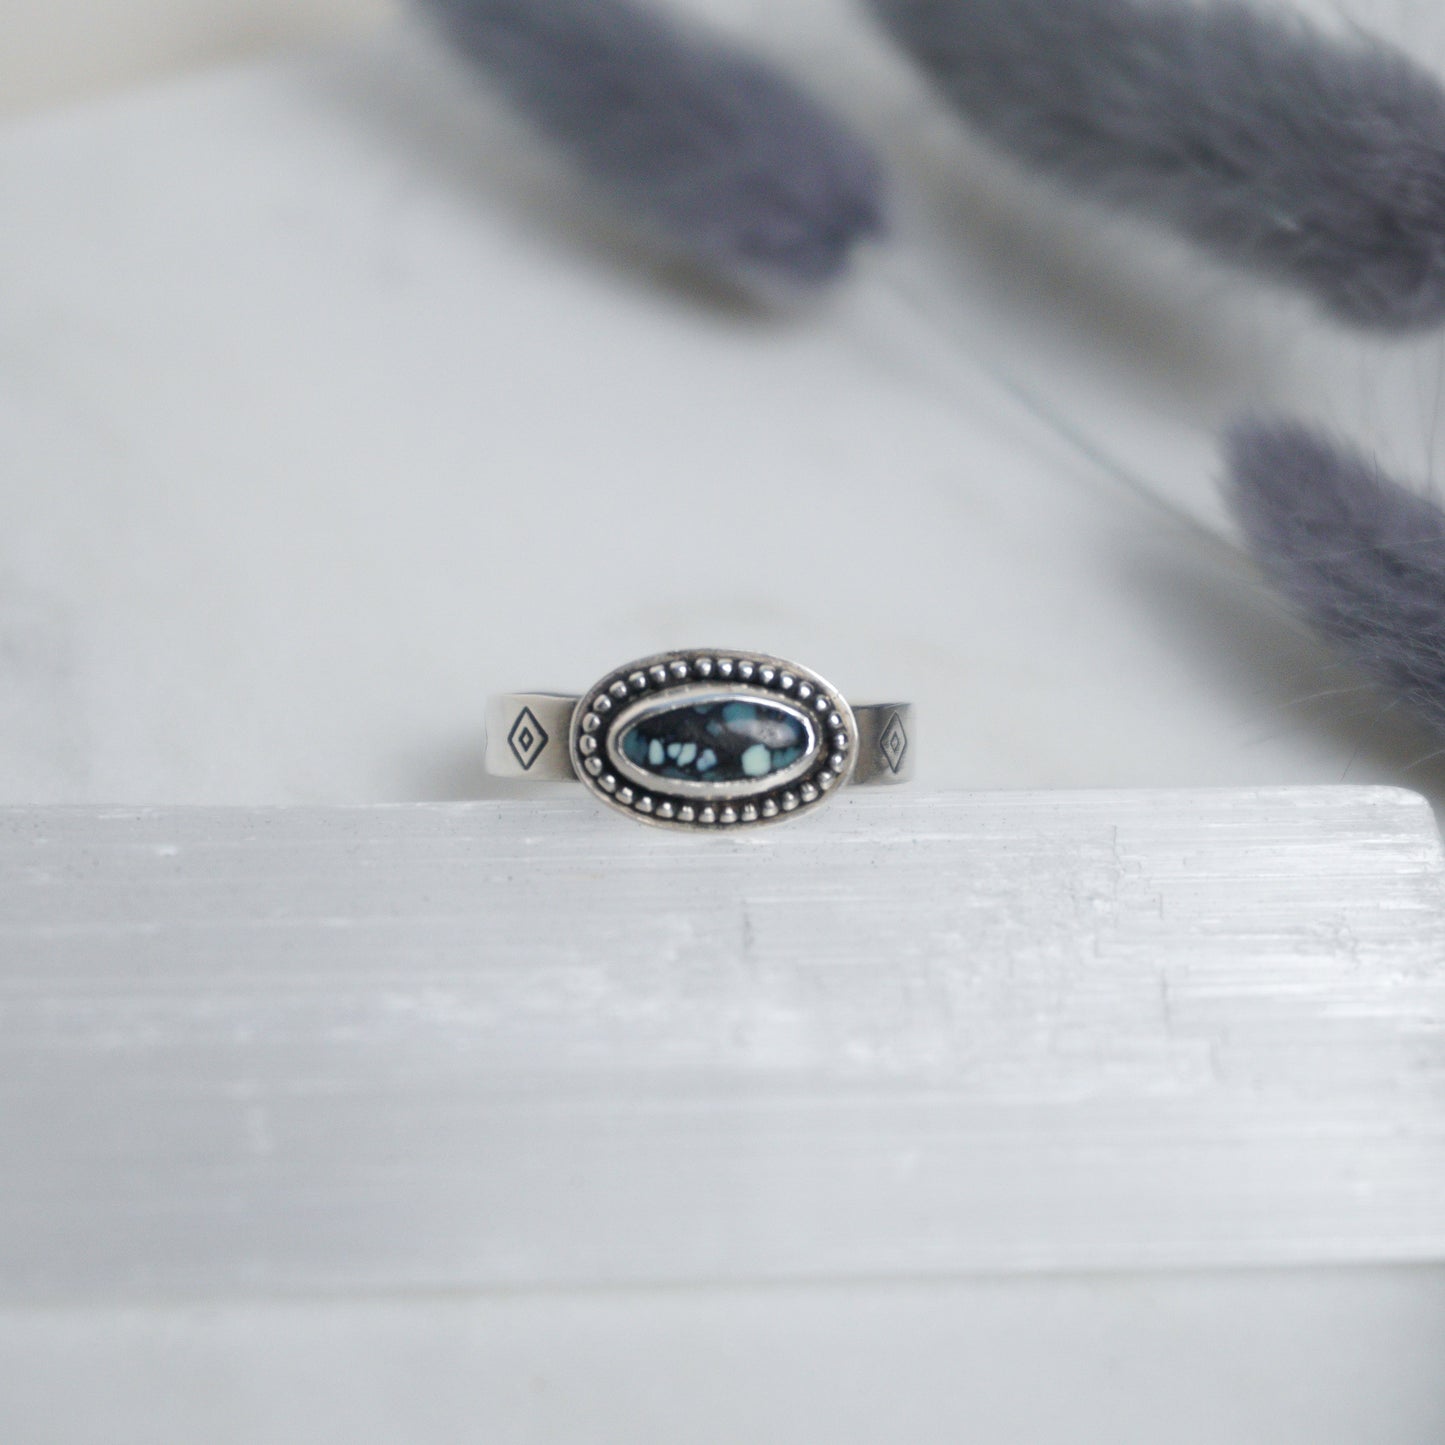 New Lander Turquoise Ring ✦ UK Size S ✦